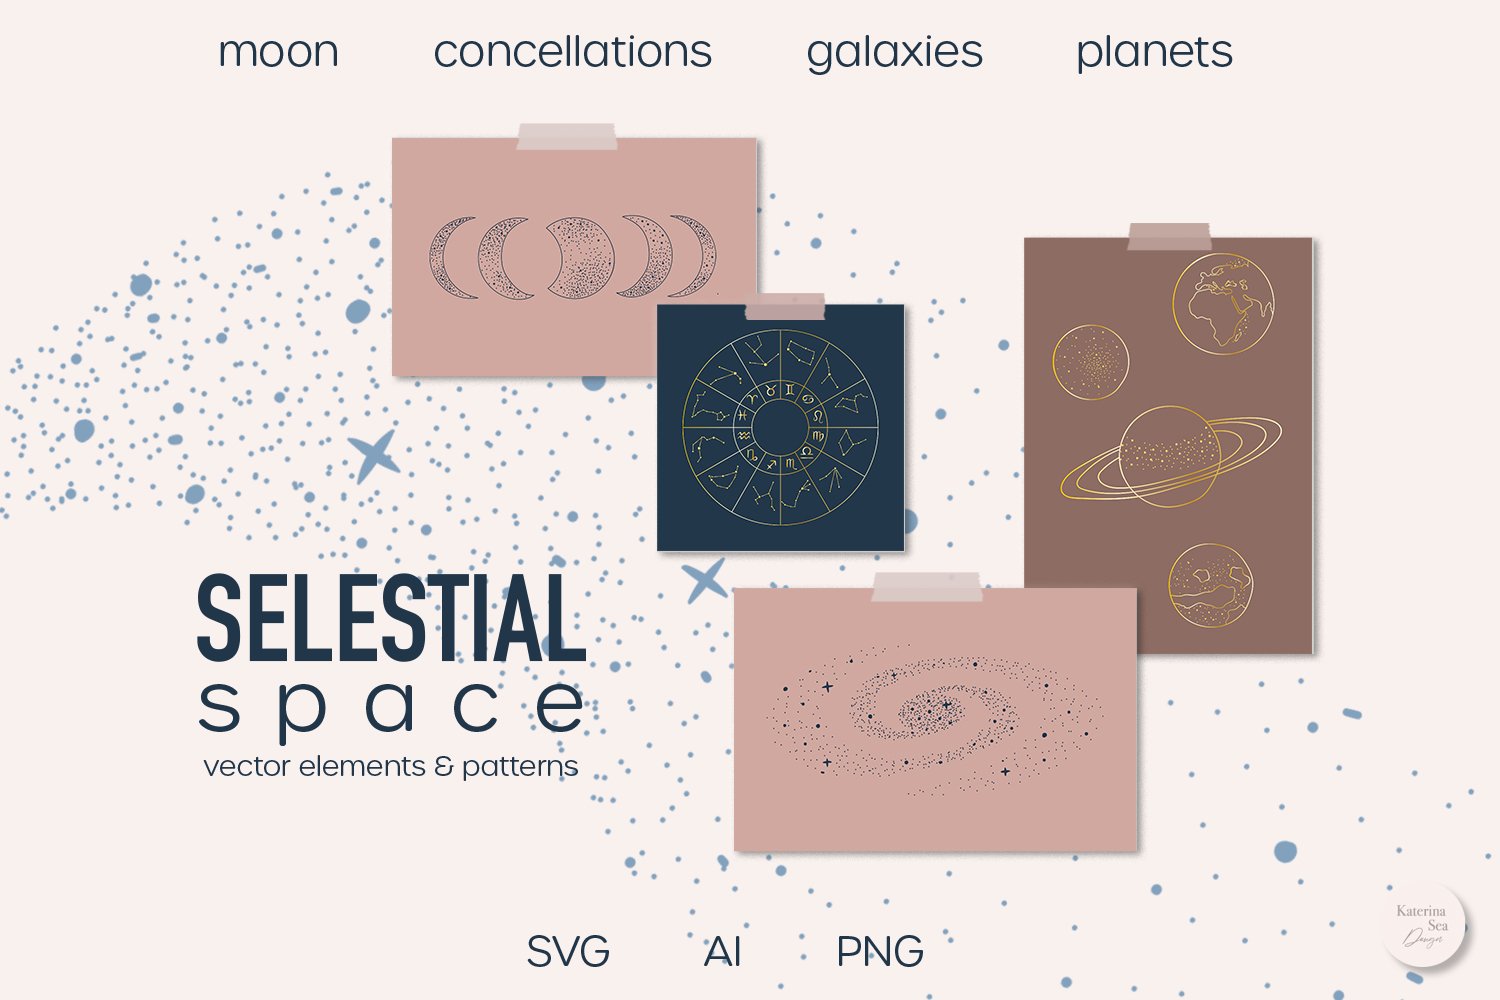 Celestial, Zodiac, Moon Vector Elements